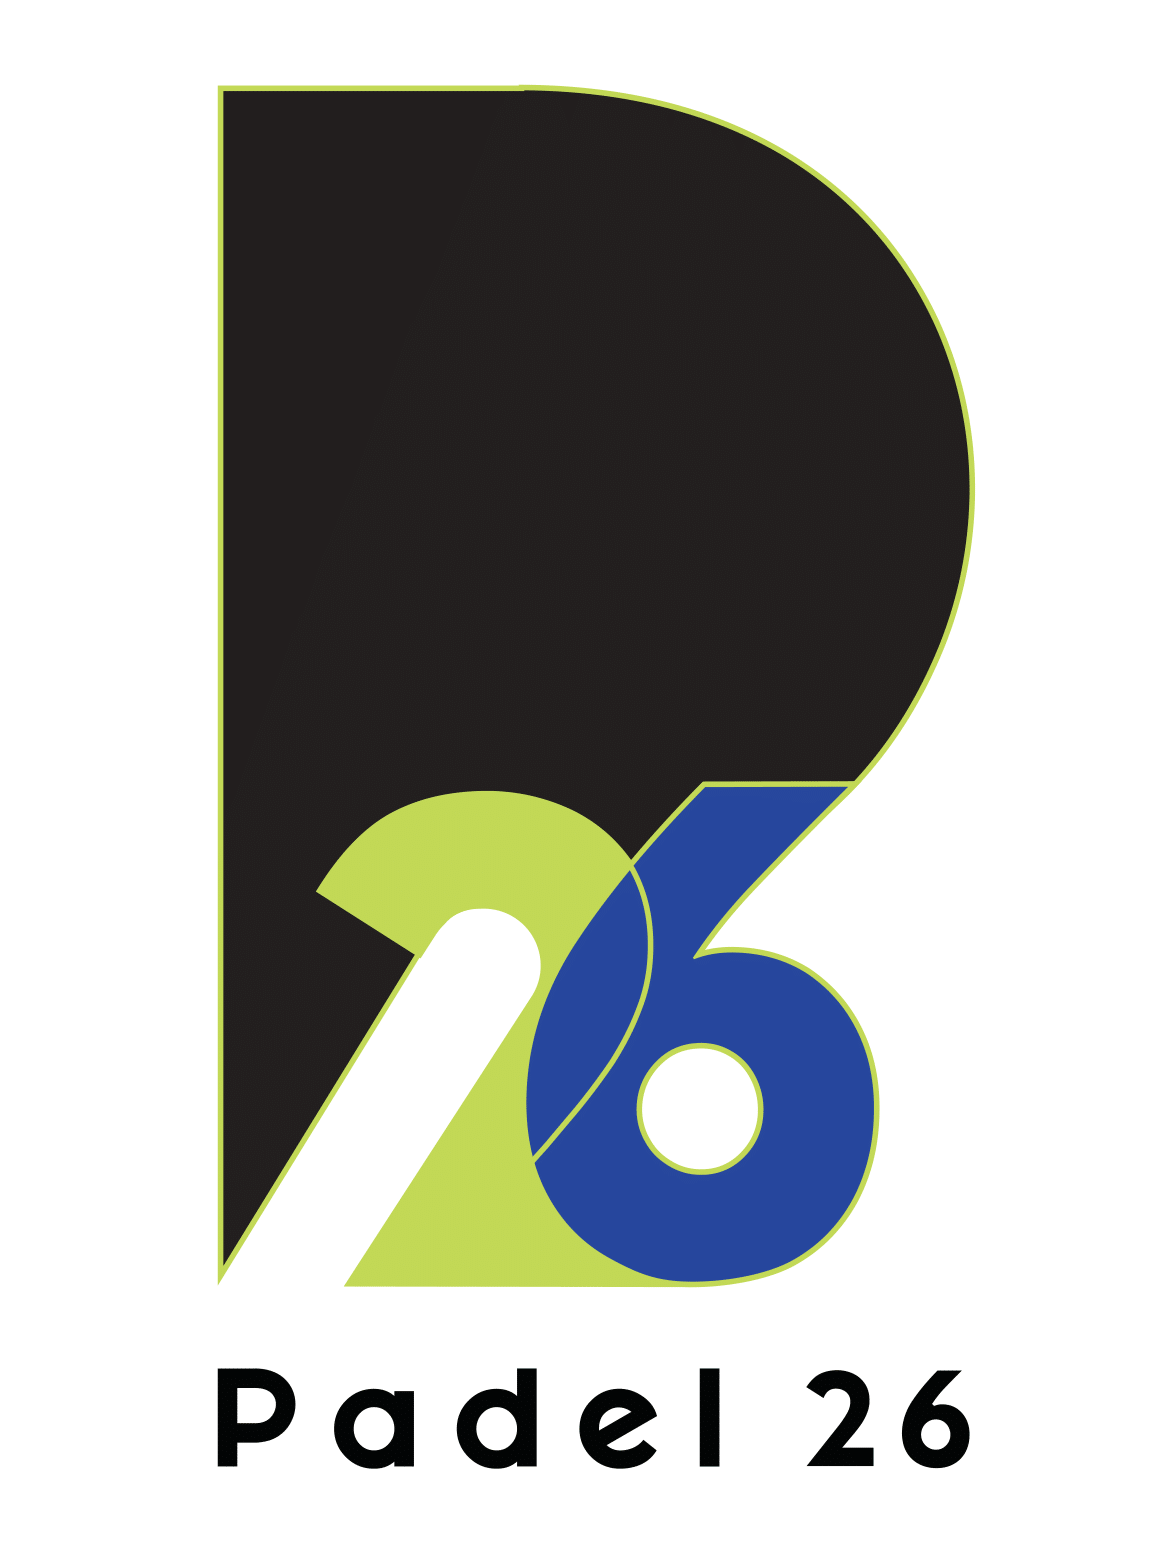 Padel26 - Logo.png